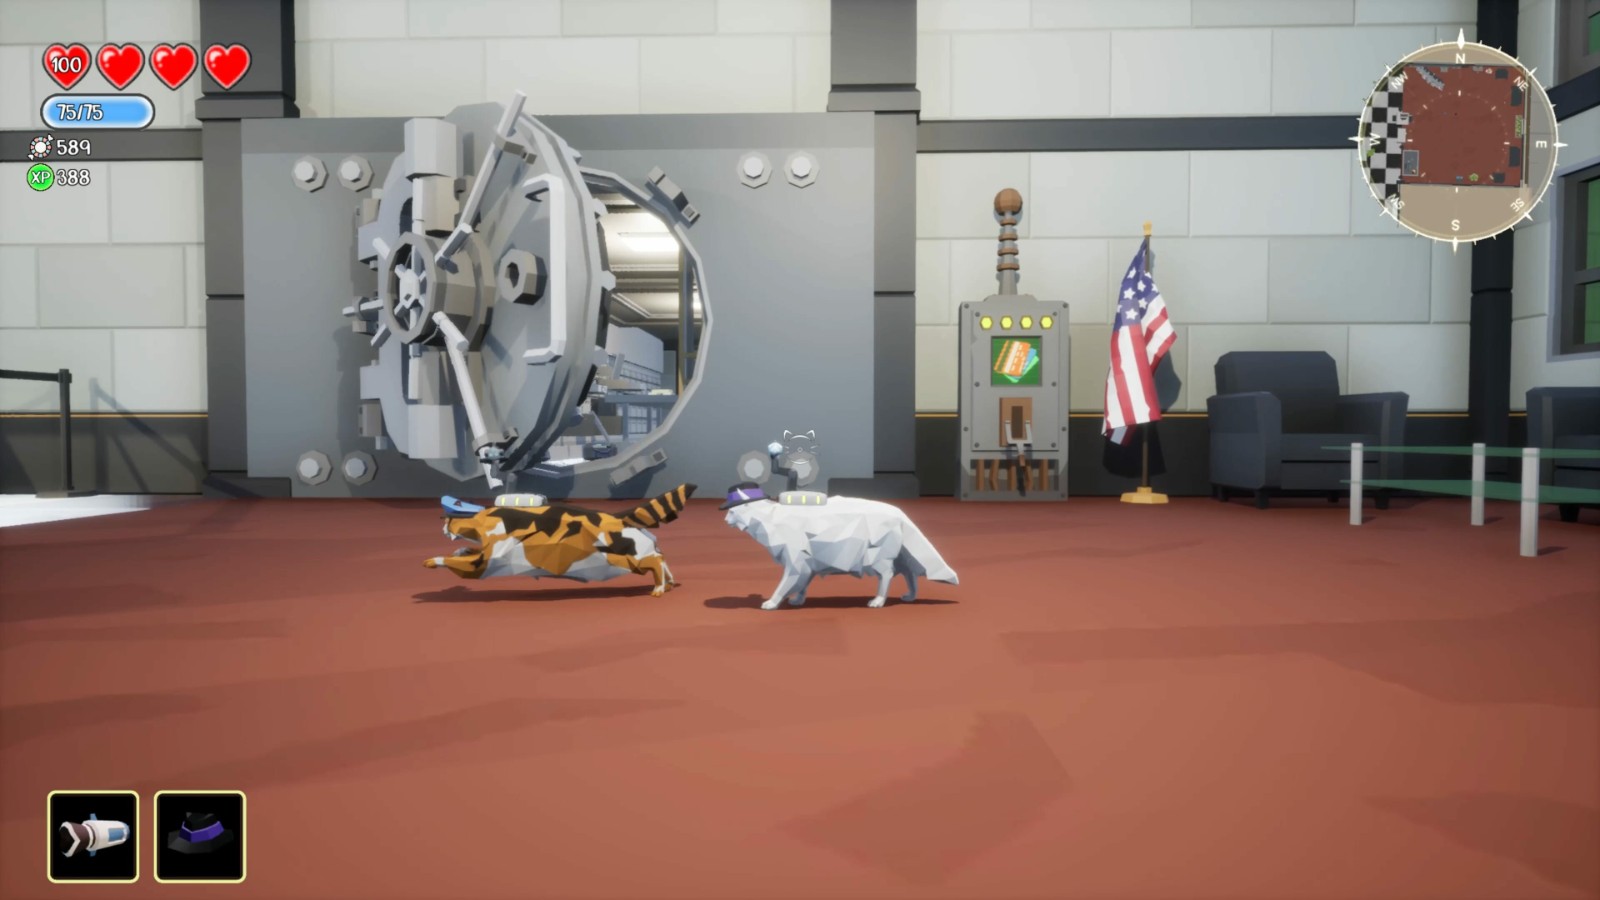 開放世界貓咪角色扮演新游《Heist Kitty》上架Steam